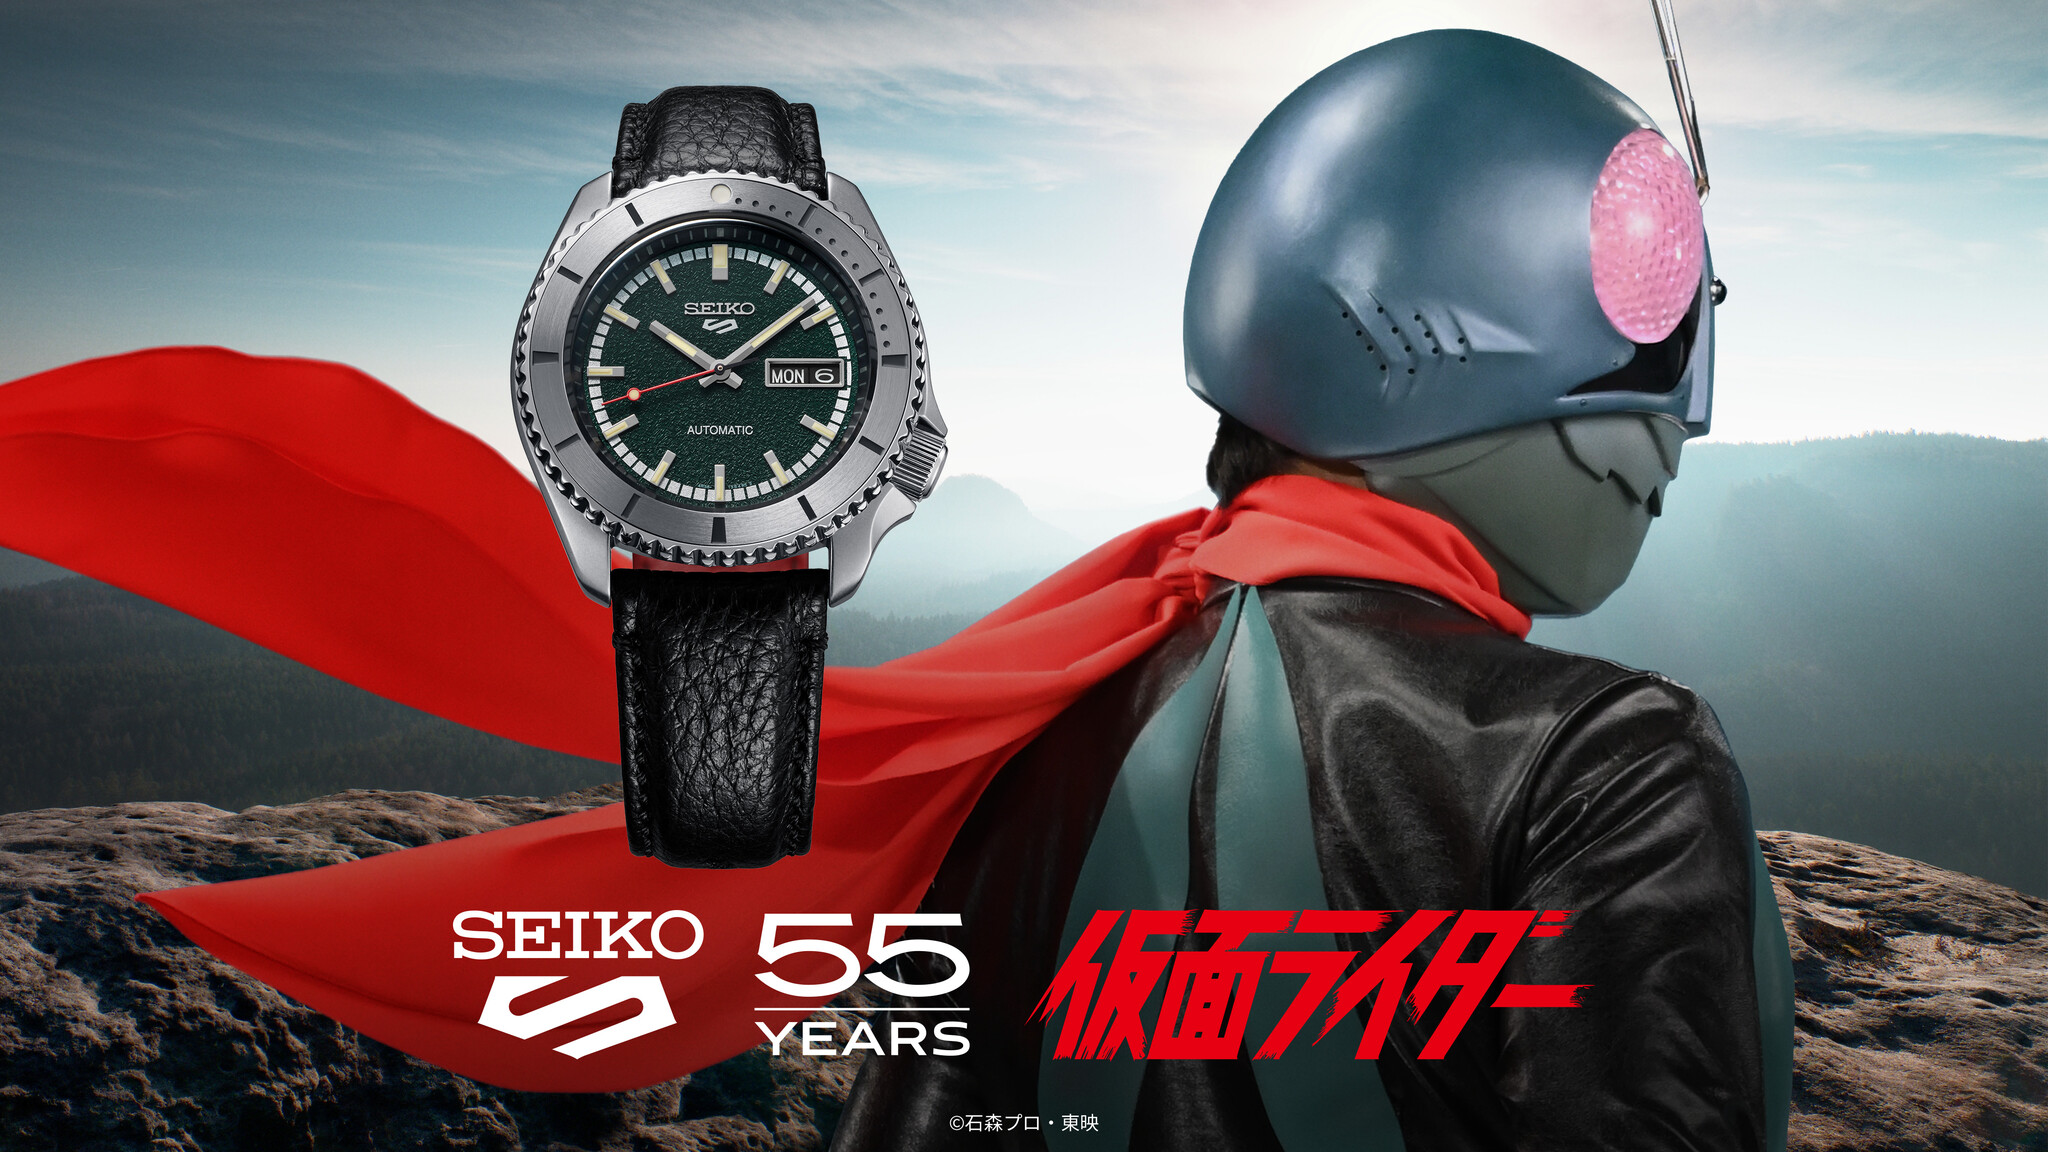 仮面ライダーコラボ限定モデル セイコー5スポーツ55周年記念